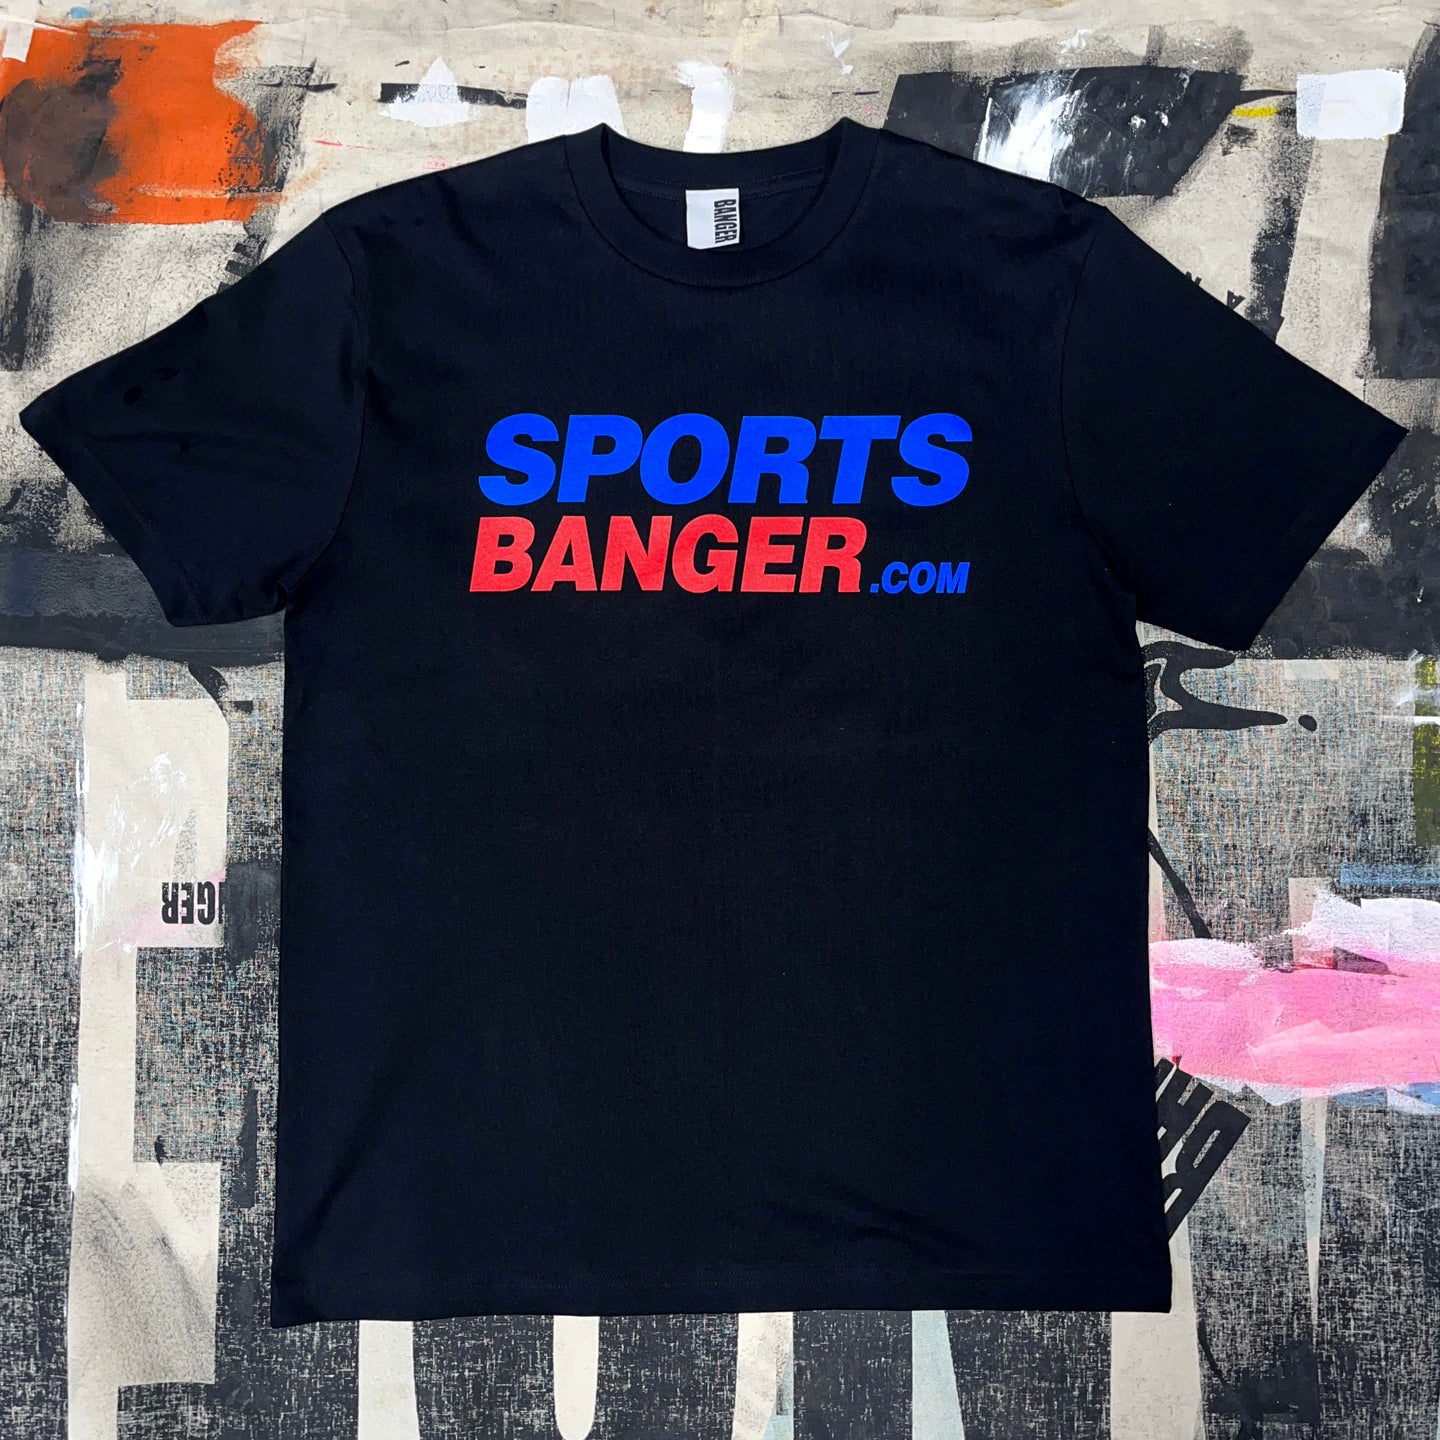 SPORTSBANGER.COM black T-shirt